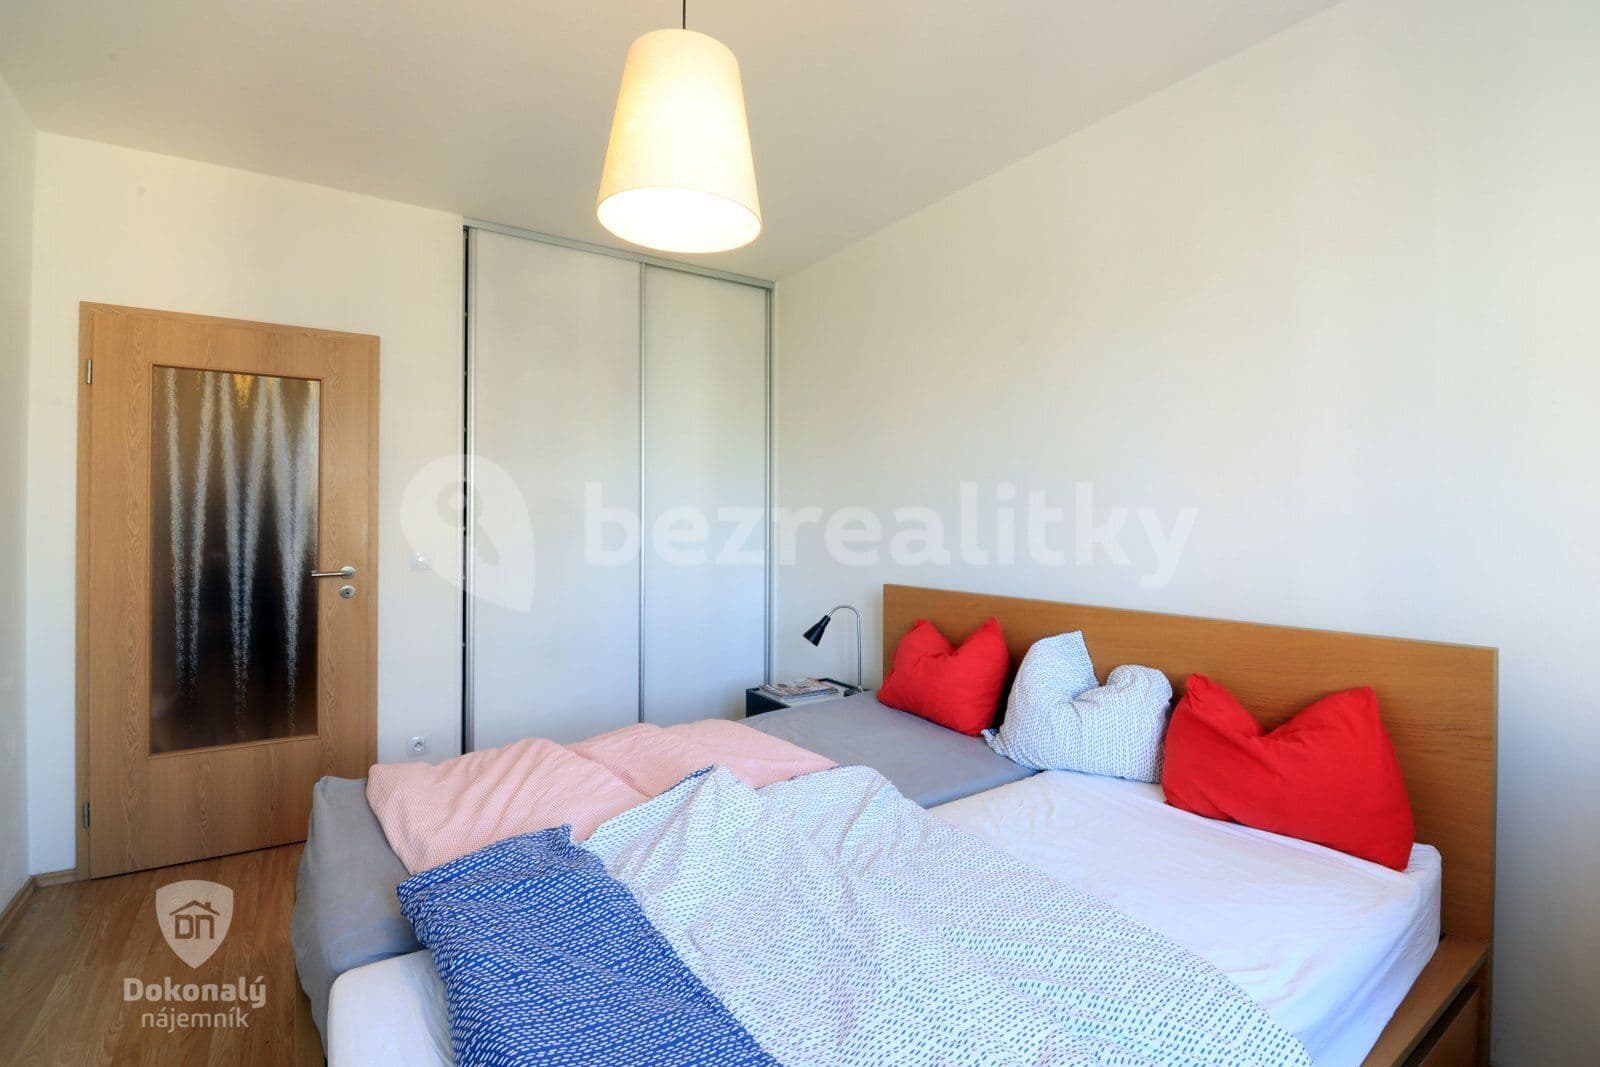 1 bedroom with open-plan kitchen flat to rent, 56 m², V dolině, Prague, Prague